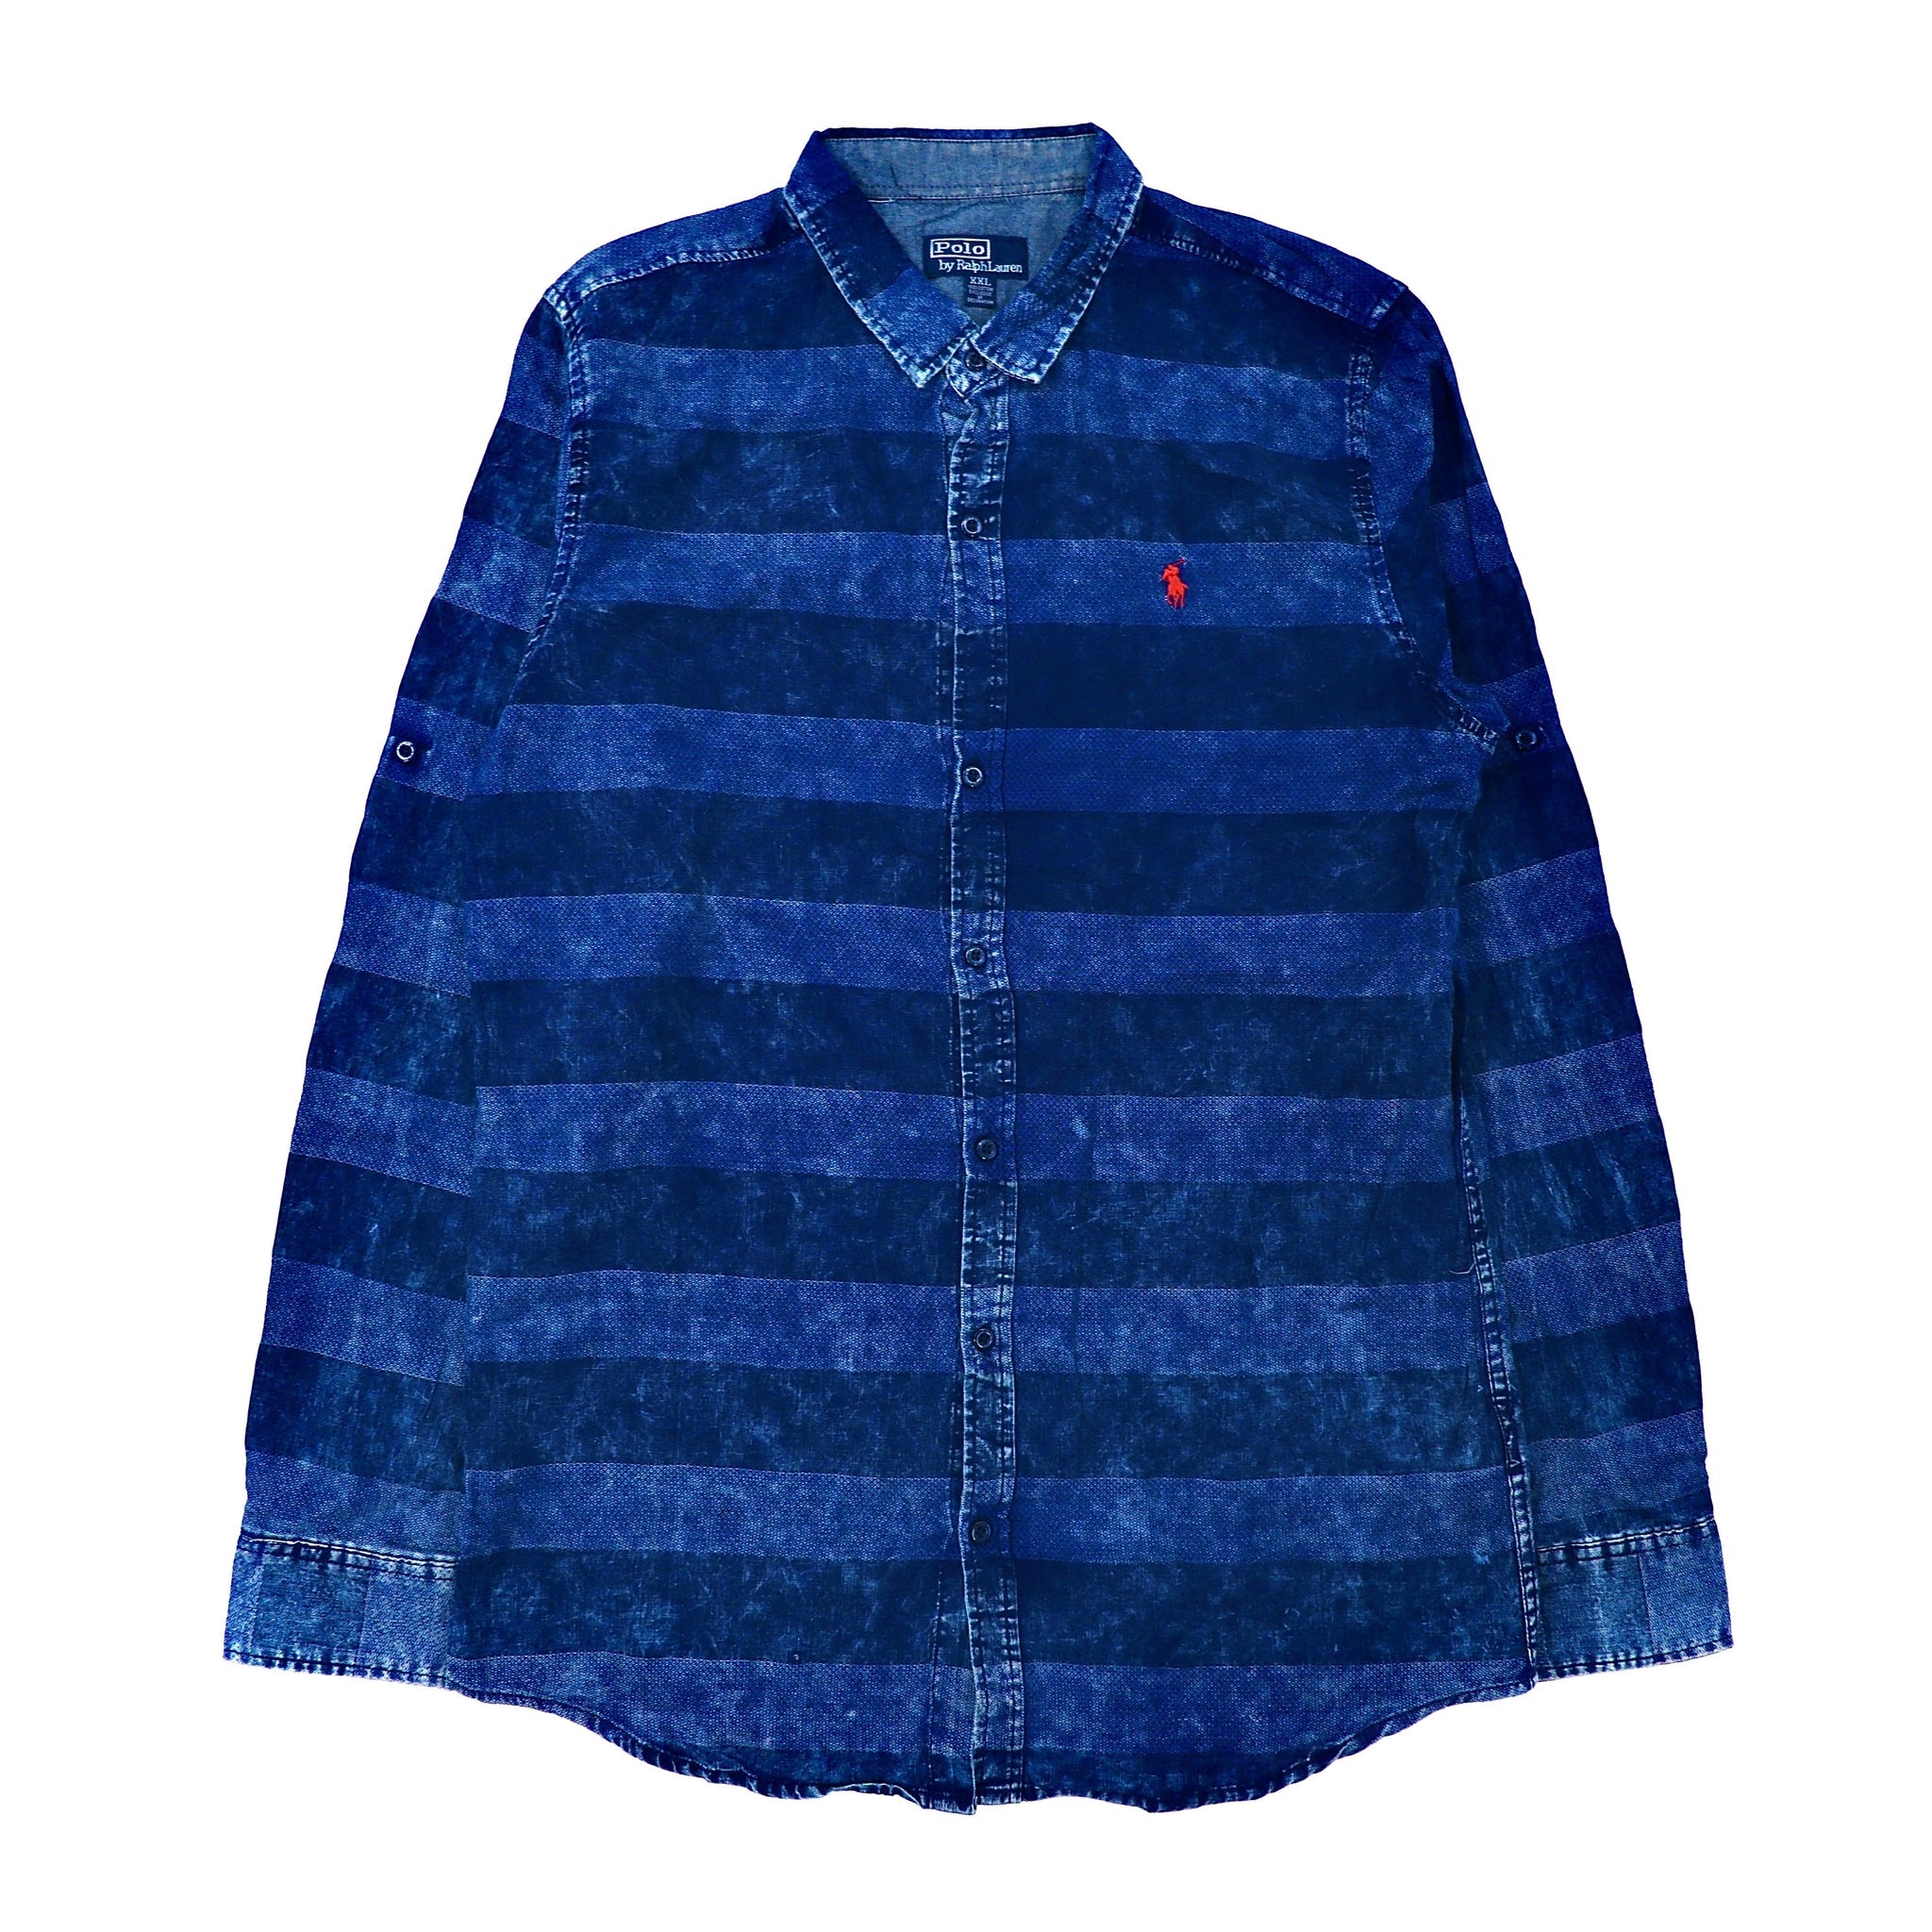 Polo by Ralph Lauren ボーダーシャツ XXL ブルー ブリーチ加工  ビッグサイズ